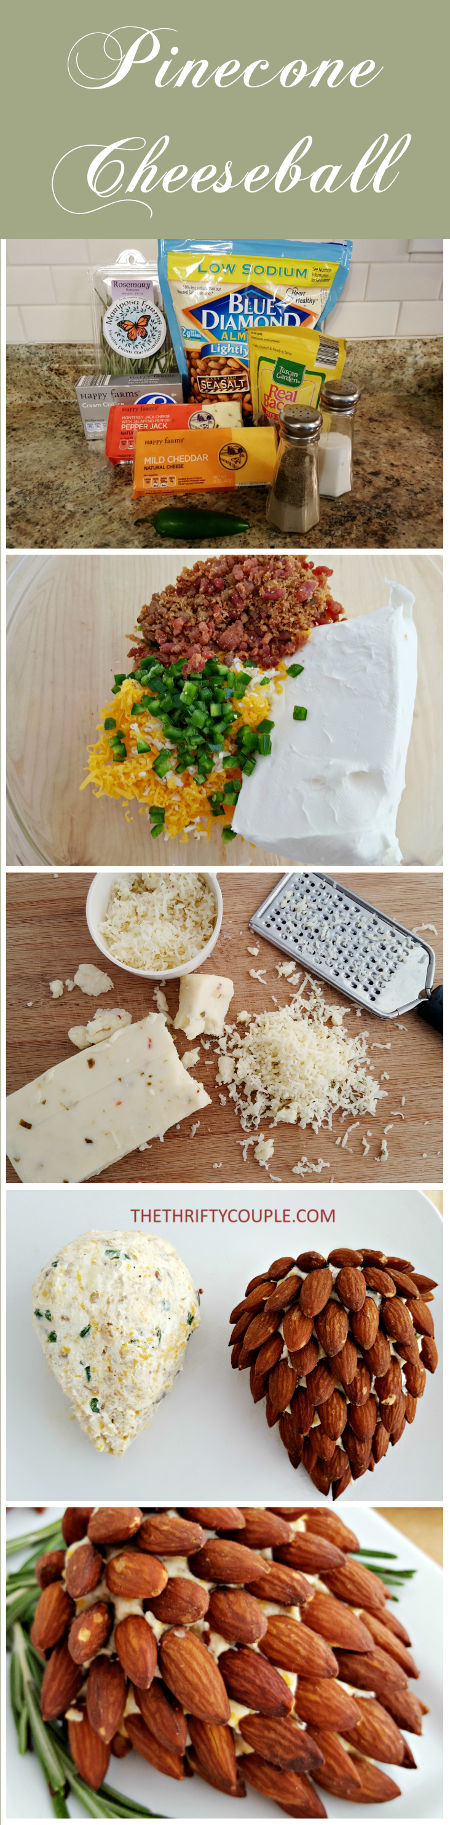 pinecone-cheeseball-appetizer-recipe-idea